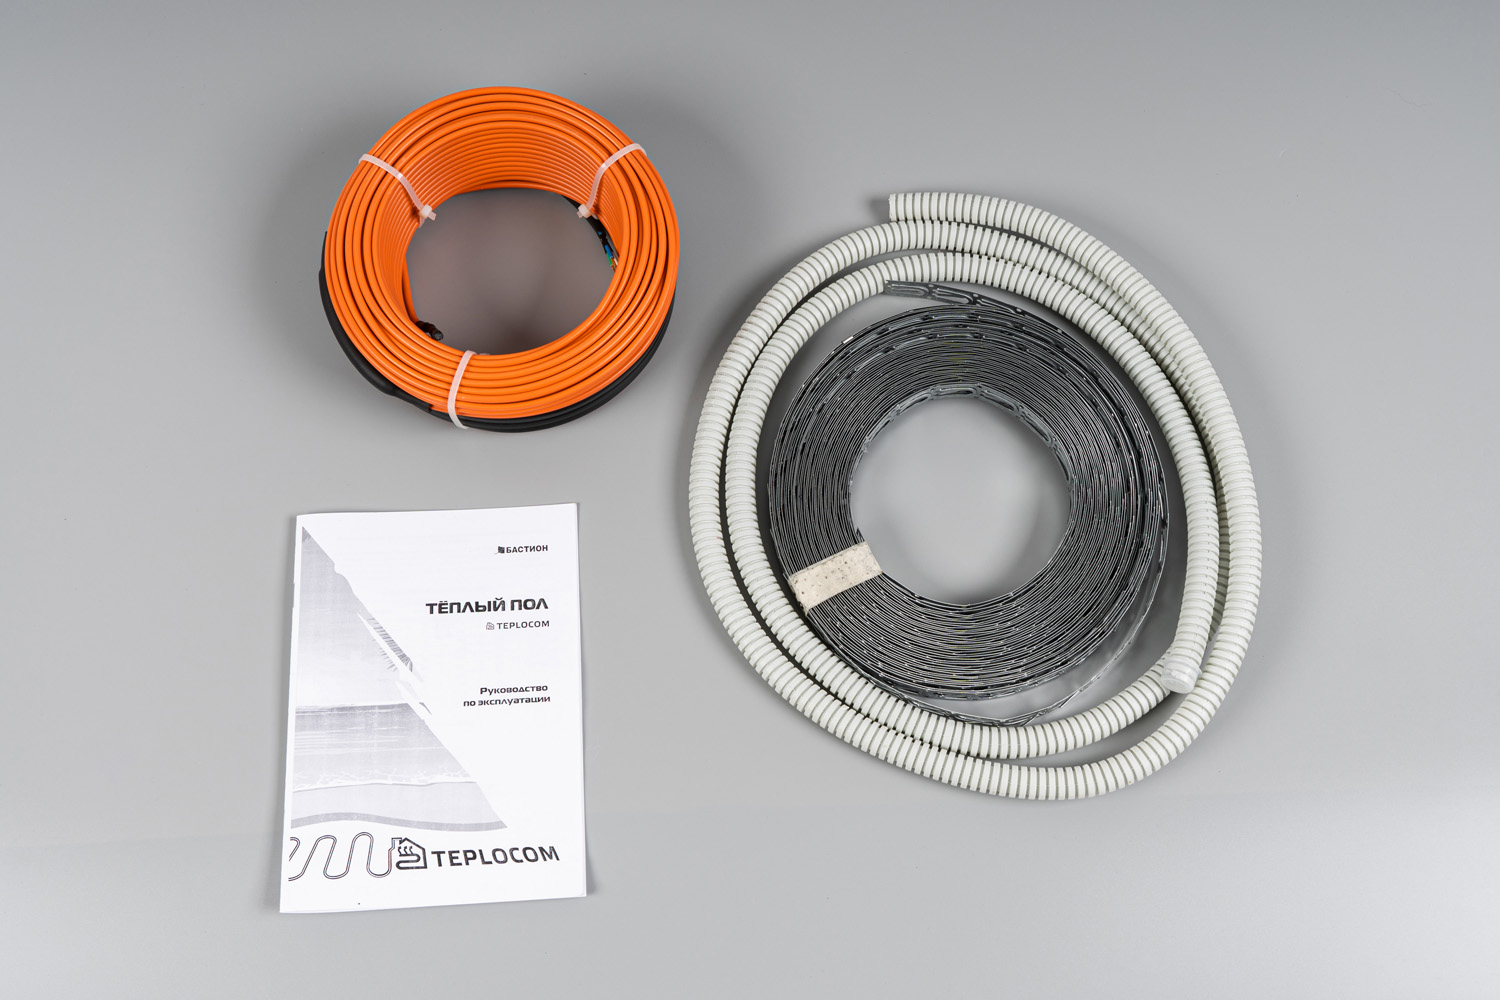 Теплый пол греющий кабель двужильный 5м, 110Вт, без термостата, Бастион TEPLOCOM НК-5 (НК-5) - фото 1